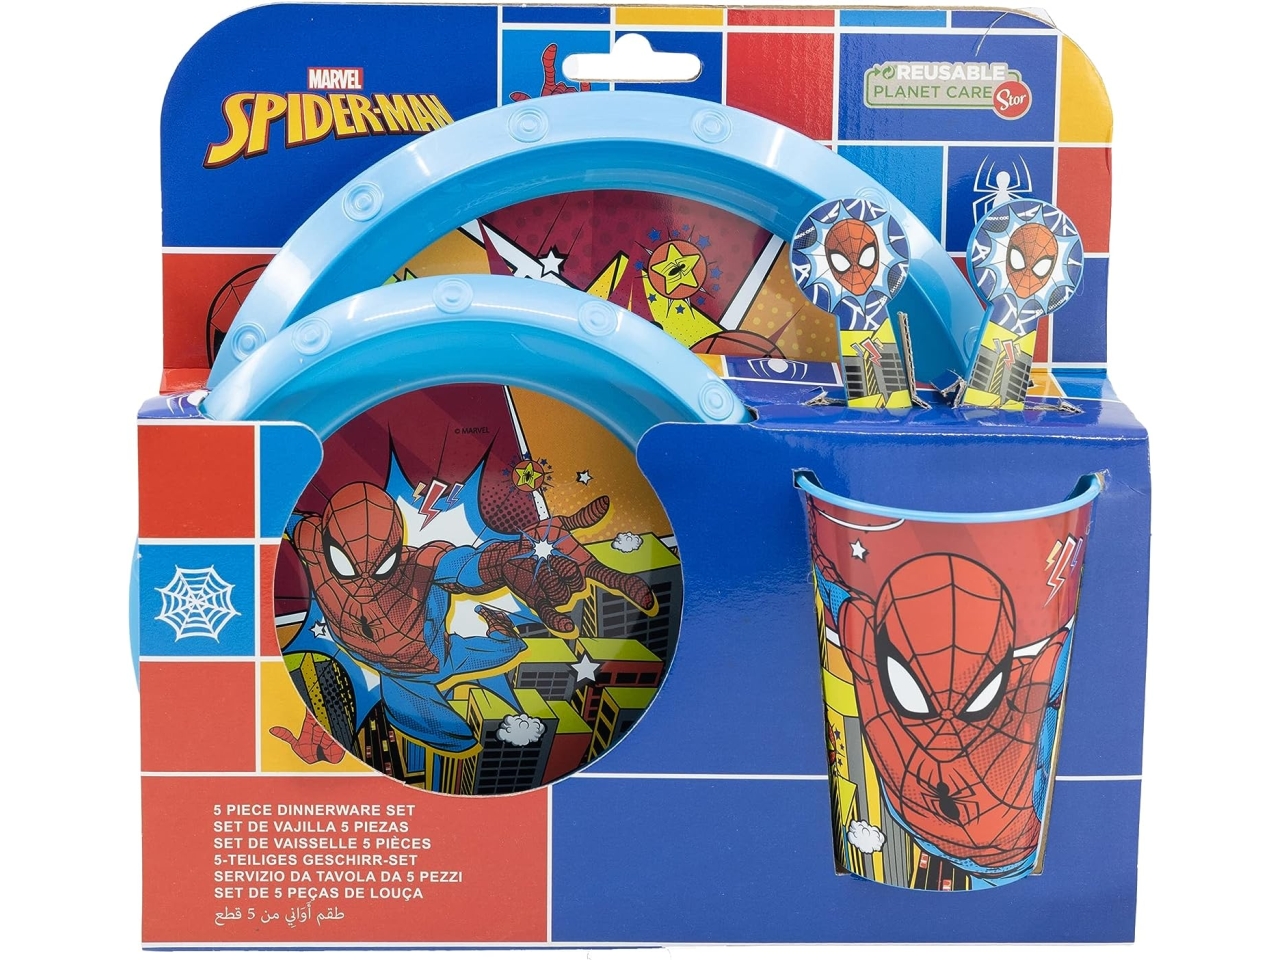 Spiderman set merenda include piatto piano, piatto fondo, bicchiere e posate